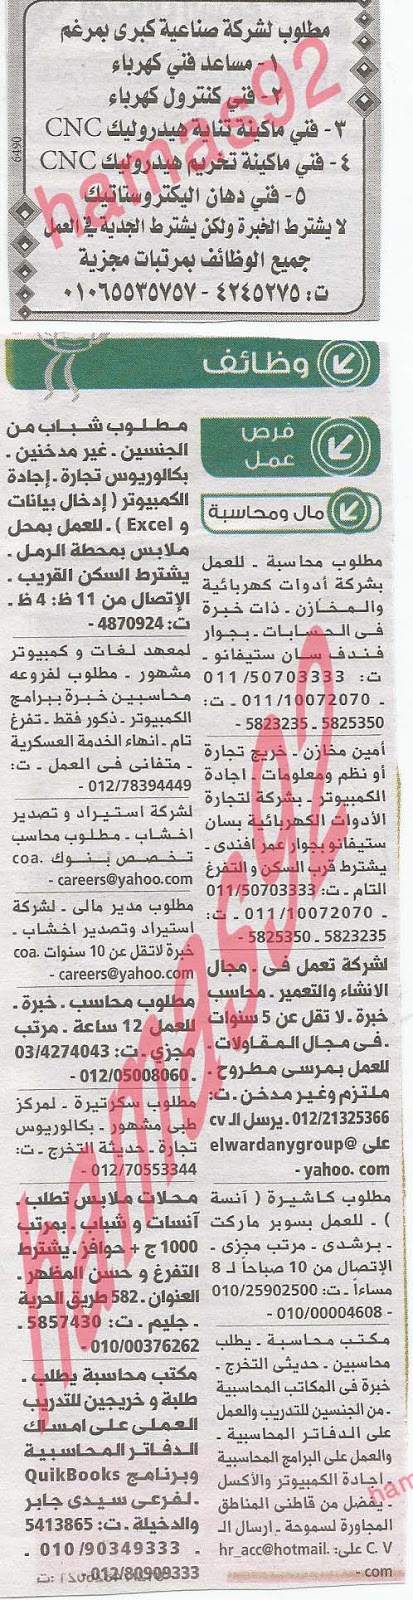 وظائف خالية من جريدة الوسيط الاسكندرية الثلاثاء 11-06-2013 %D9%88+%D8%B3+%D8%B3+5